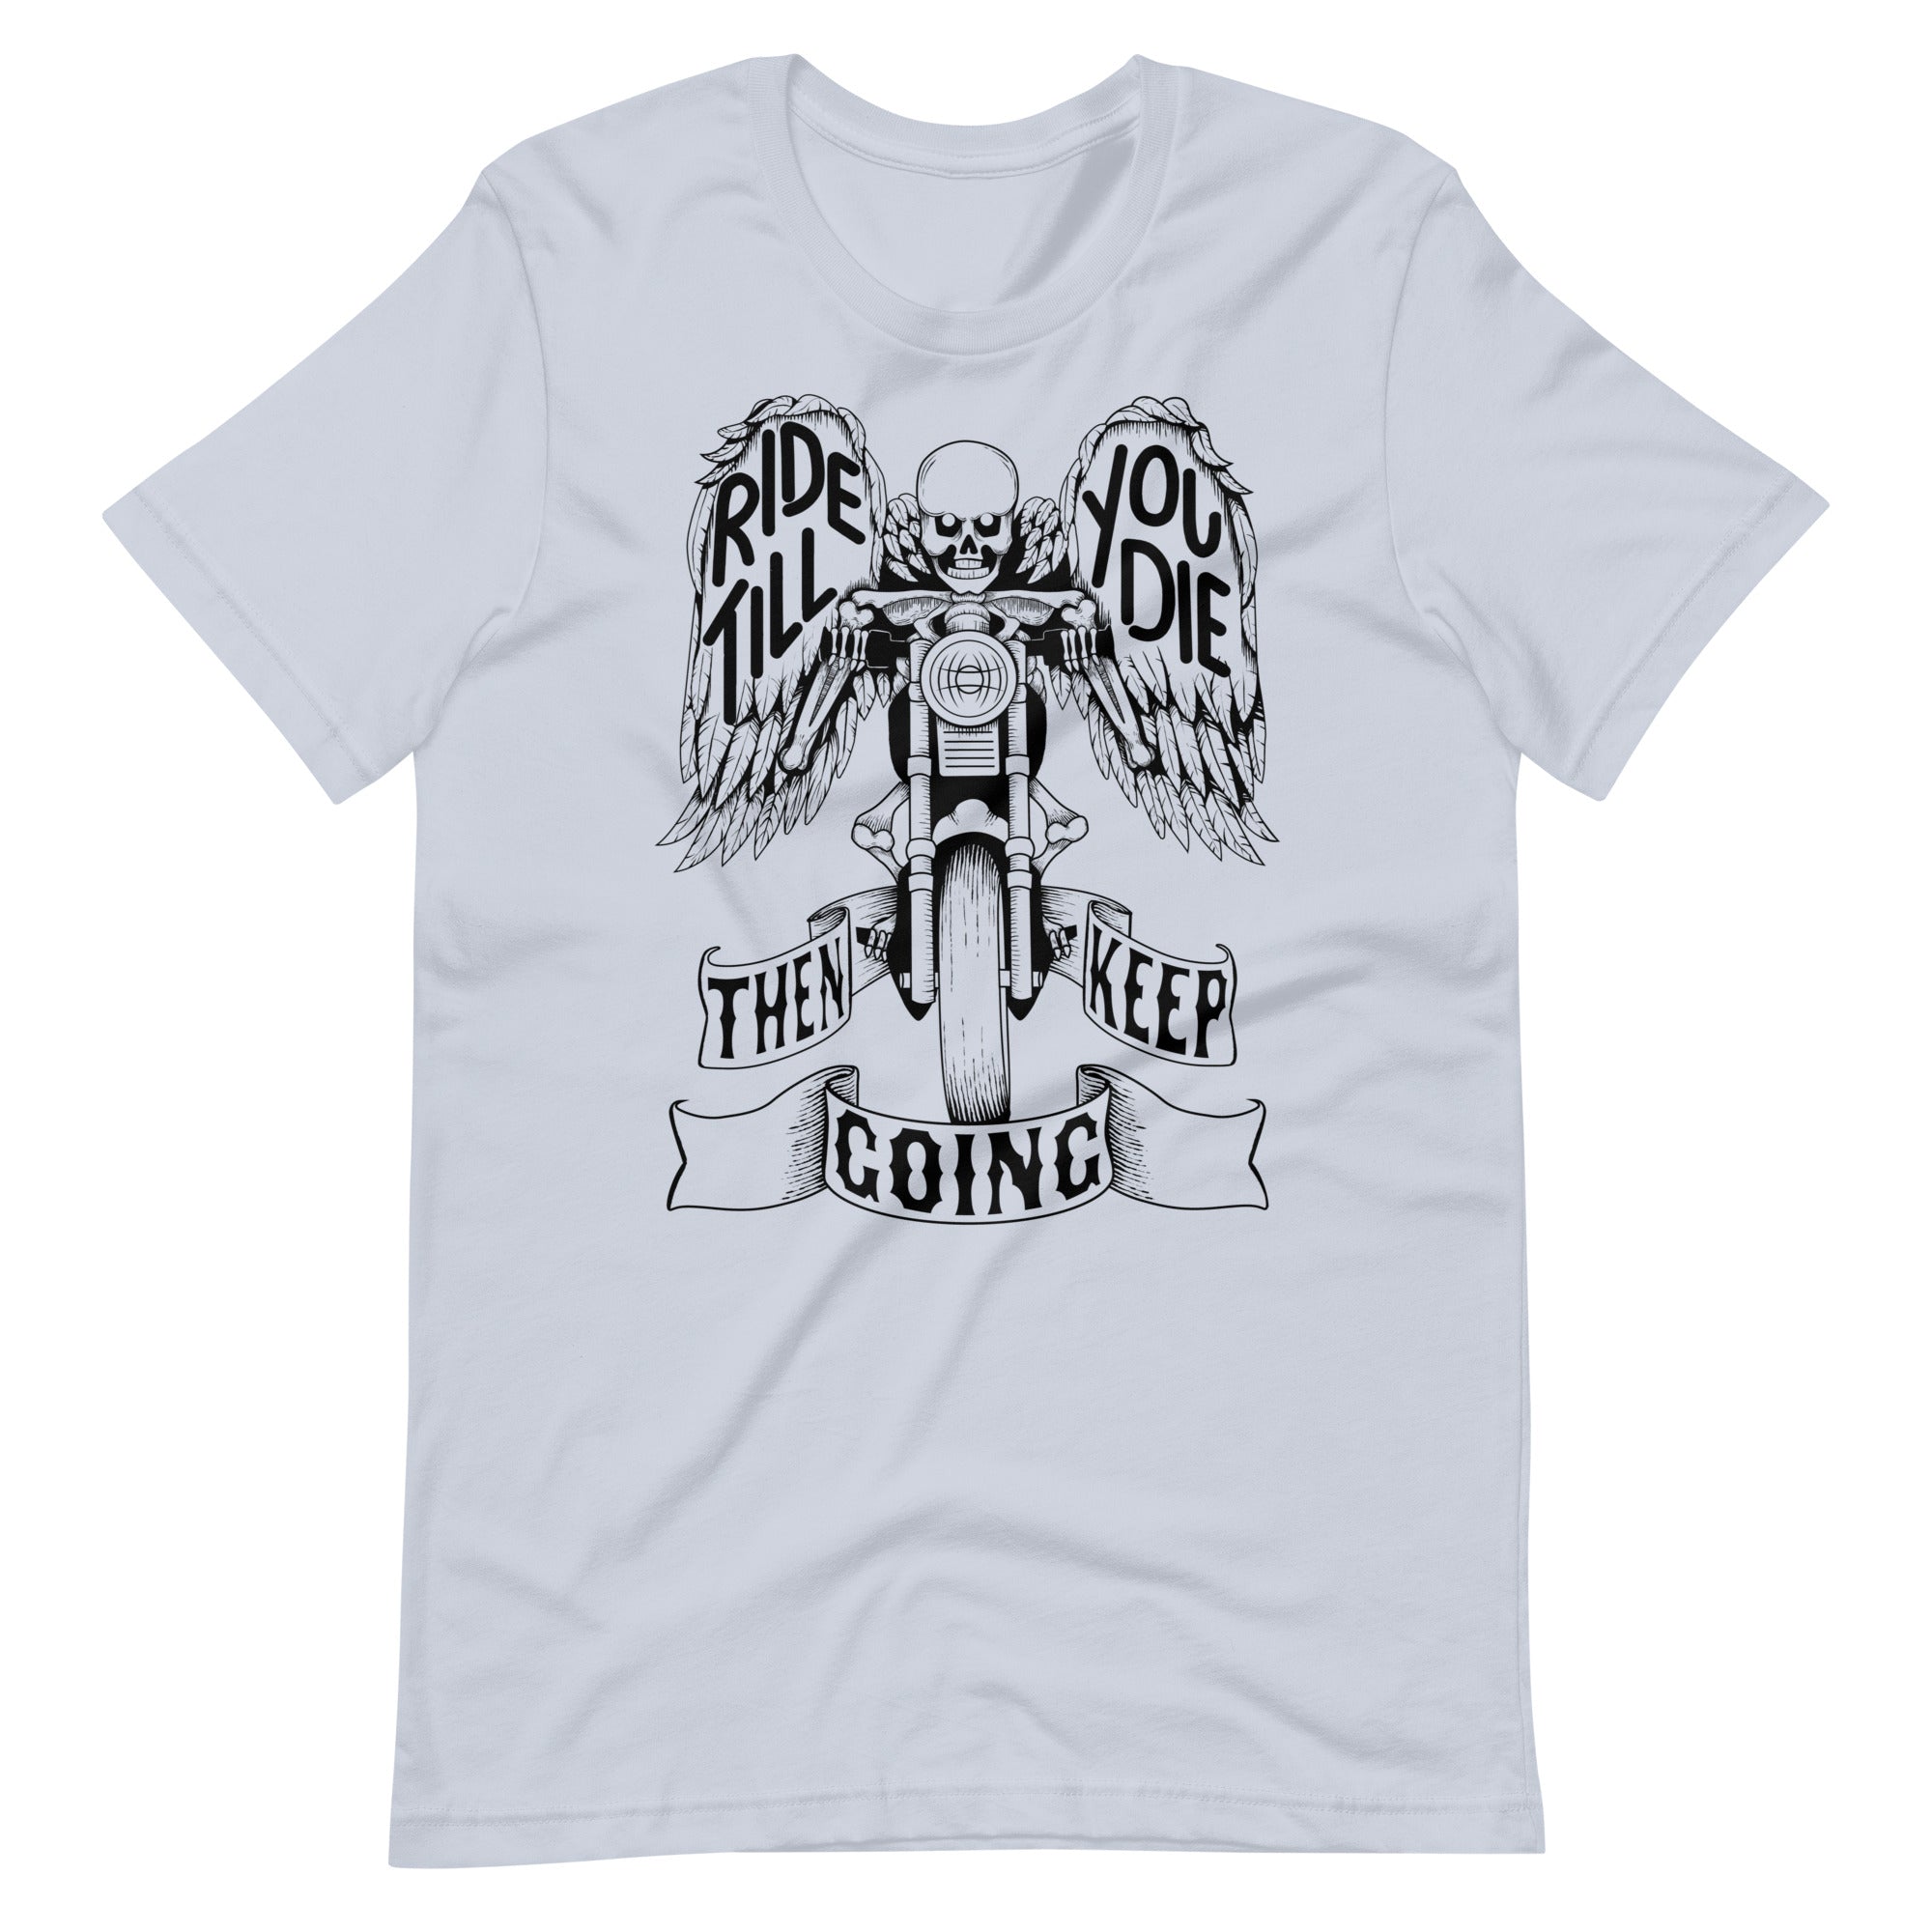 "Ride Till You Die" Tee Shirt